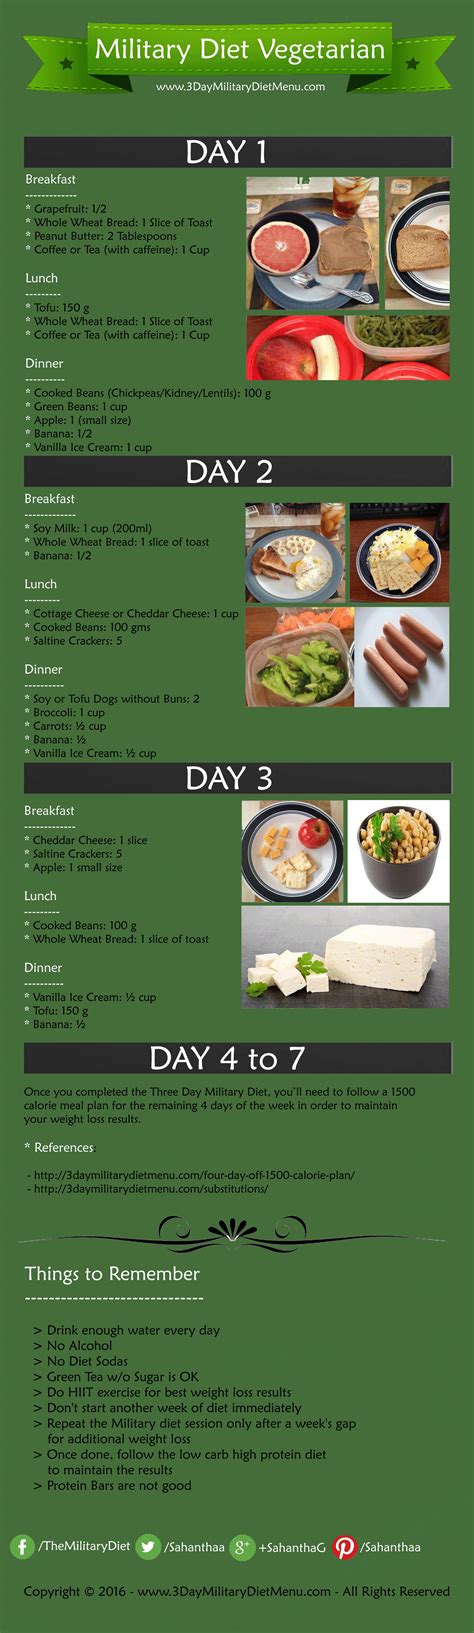 3 Day Military Diet for Vegetarians & Vegans